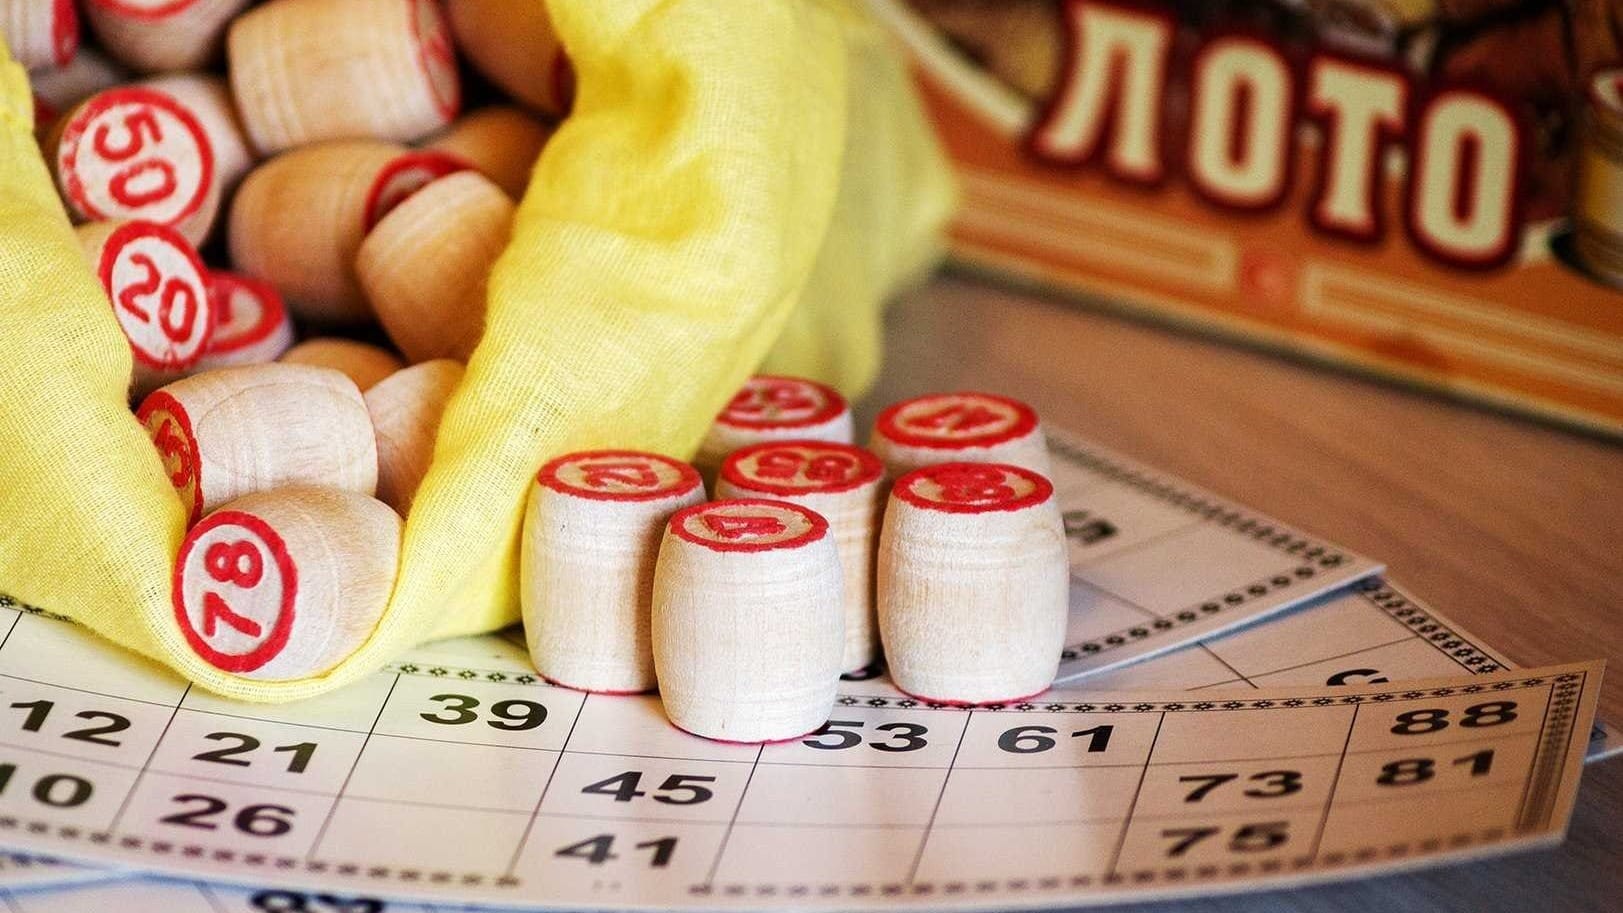 Государственные лотереи опять в убытке - в кабмине задумались их ликвидировать